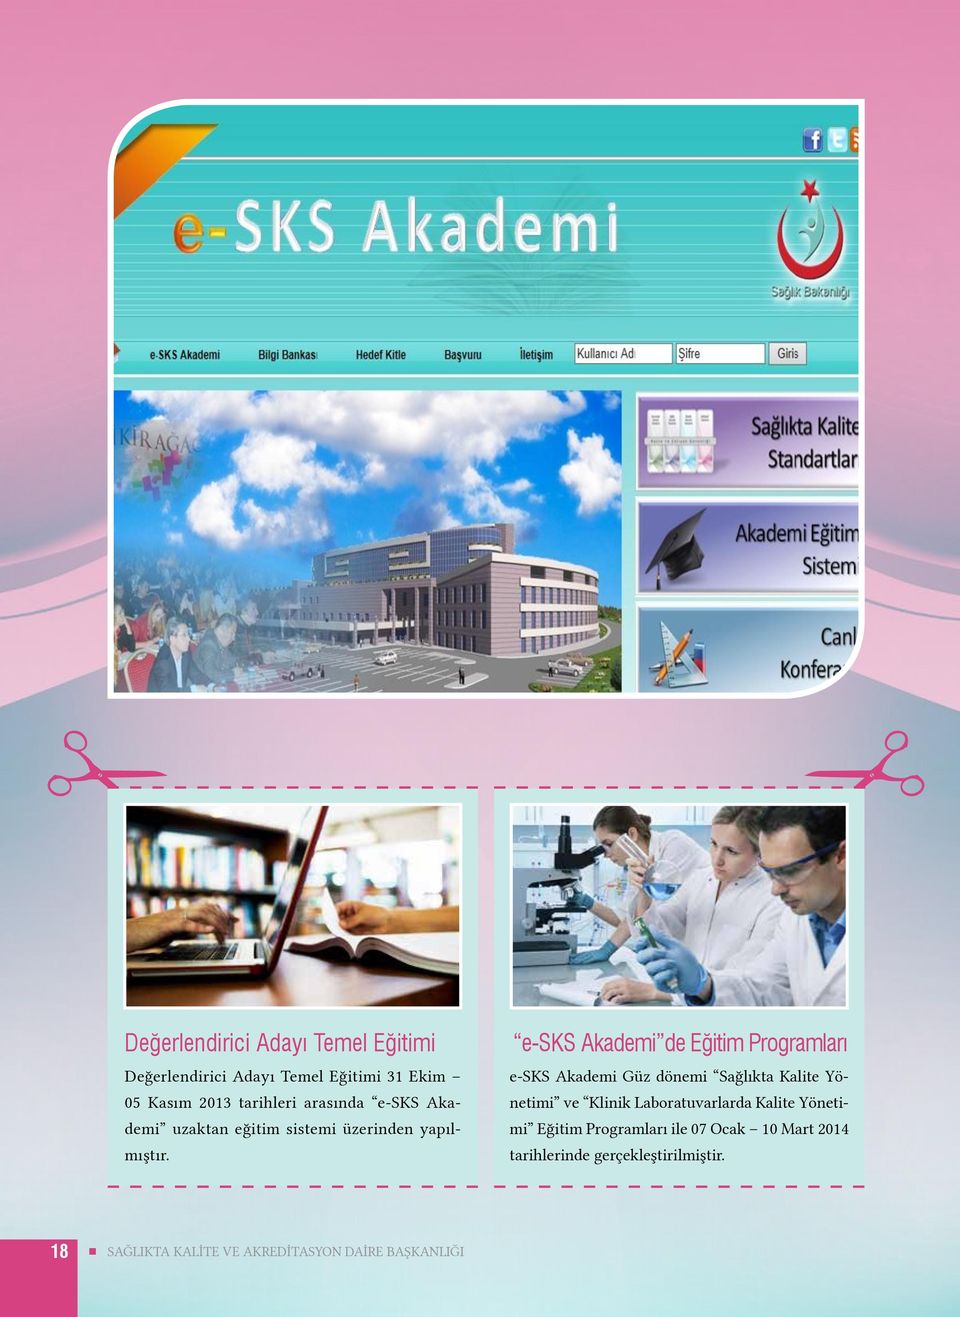 e-sks Akademi de Eğitim Programları e-sks Akademi Güz dönemi Sağlıkta Kalite Yönetimi ve Klinik